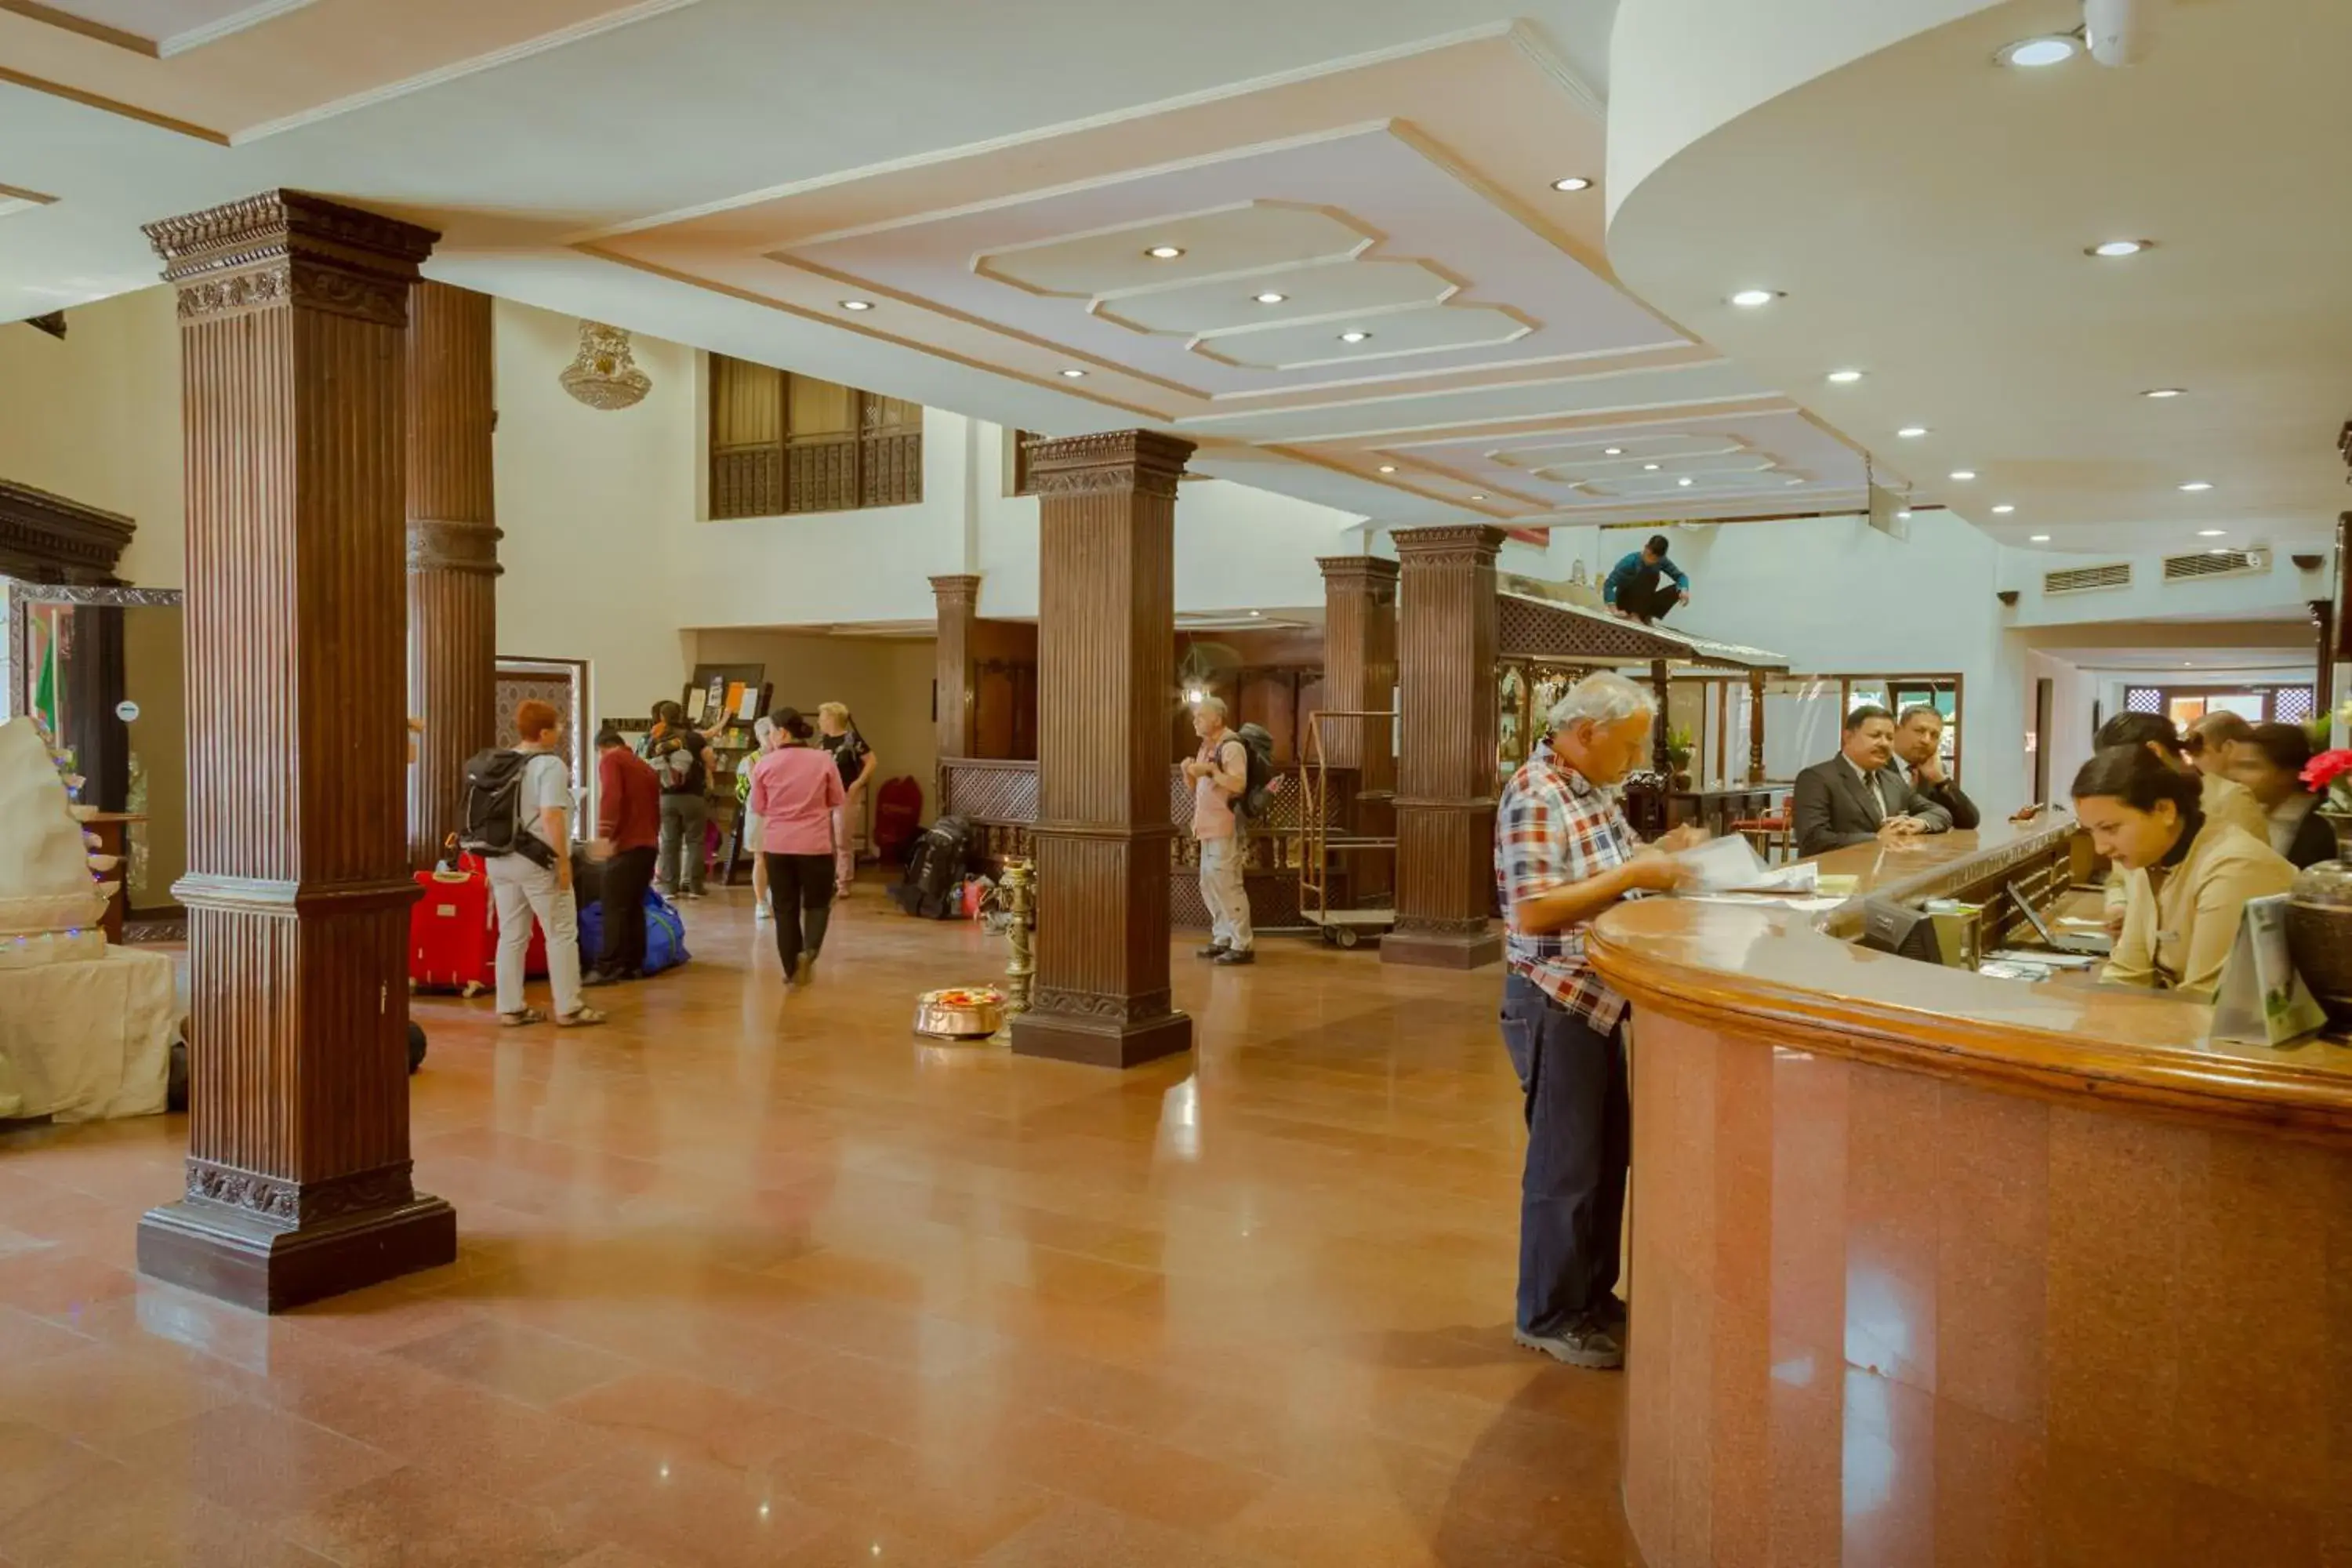 Lobby or reception in Hotel Vaishali